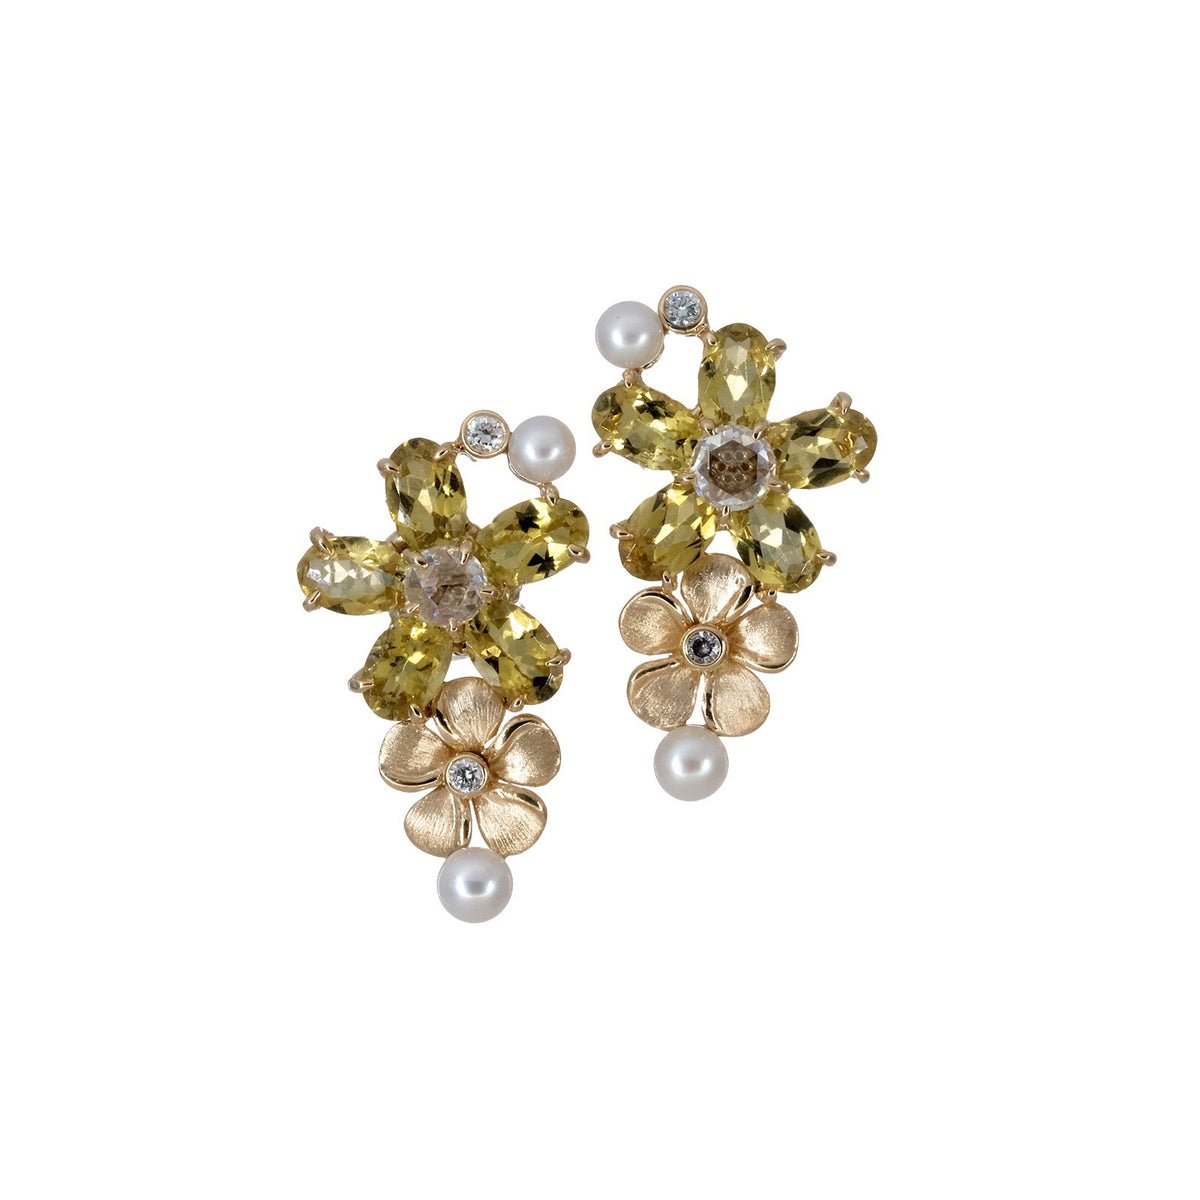 Yellow Tourmaline Earrings with Gold Kalachuchi